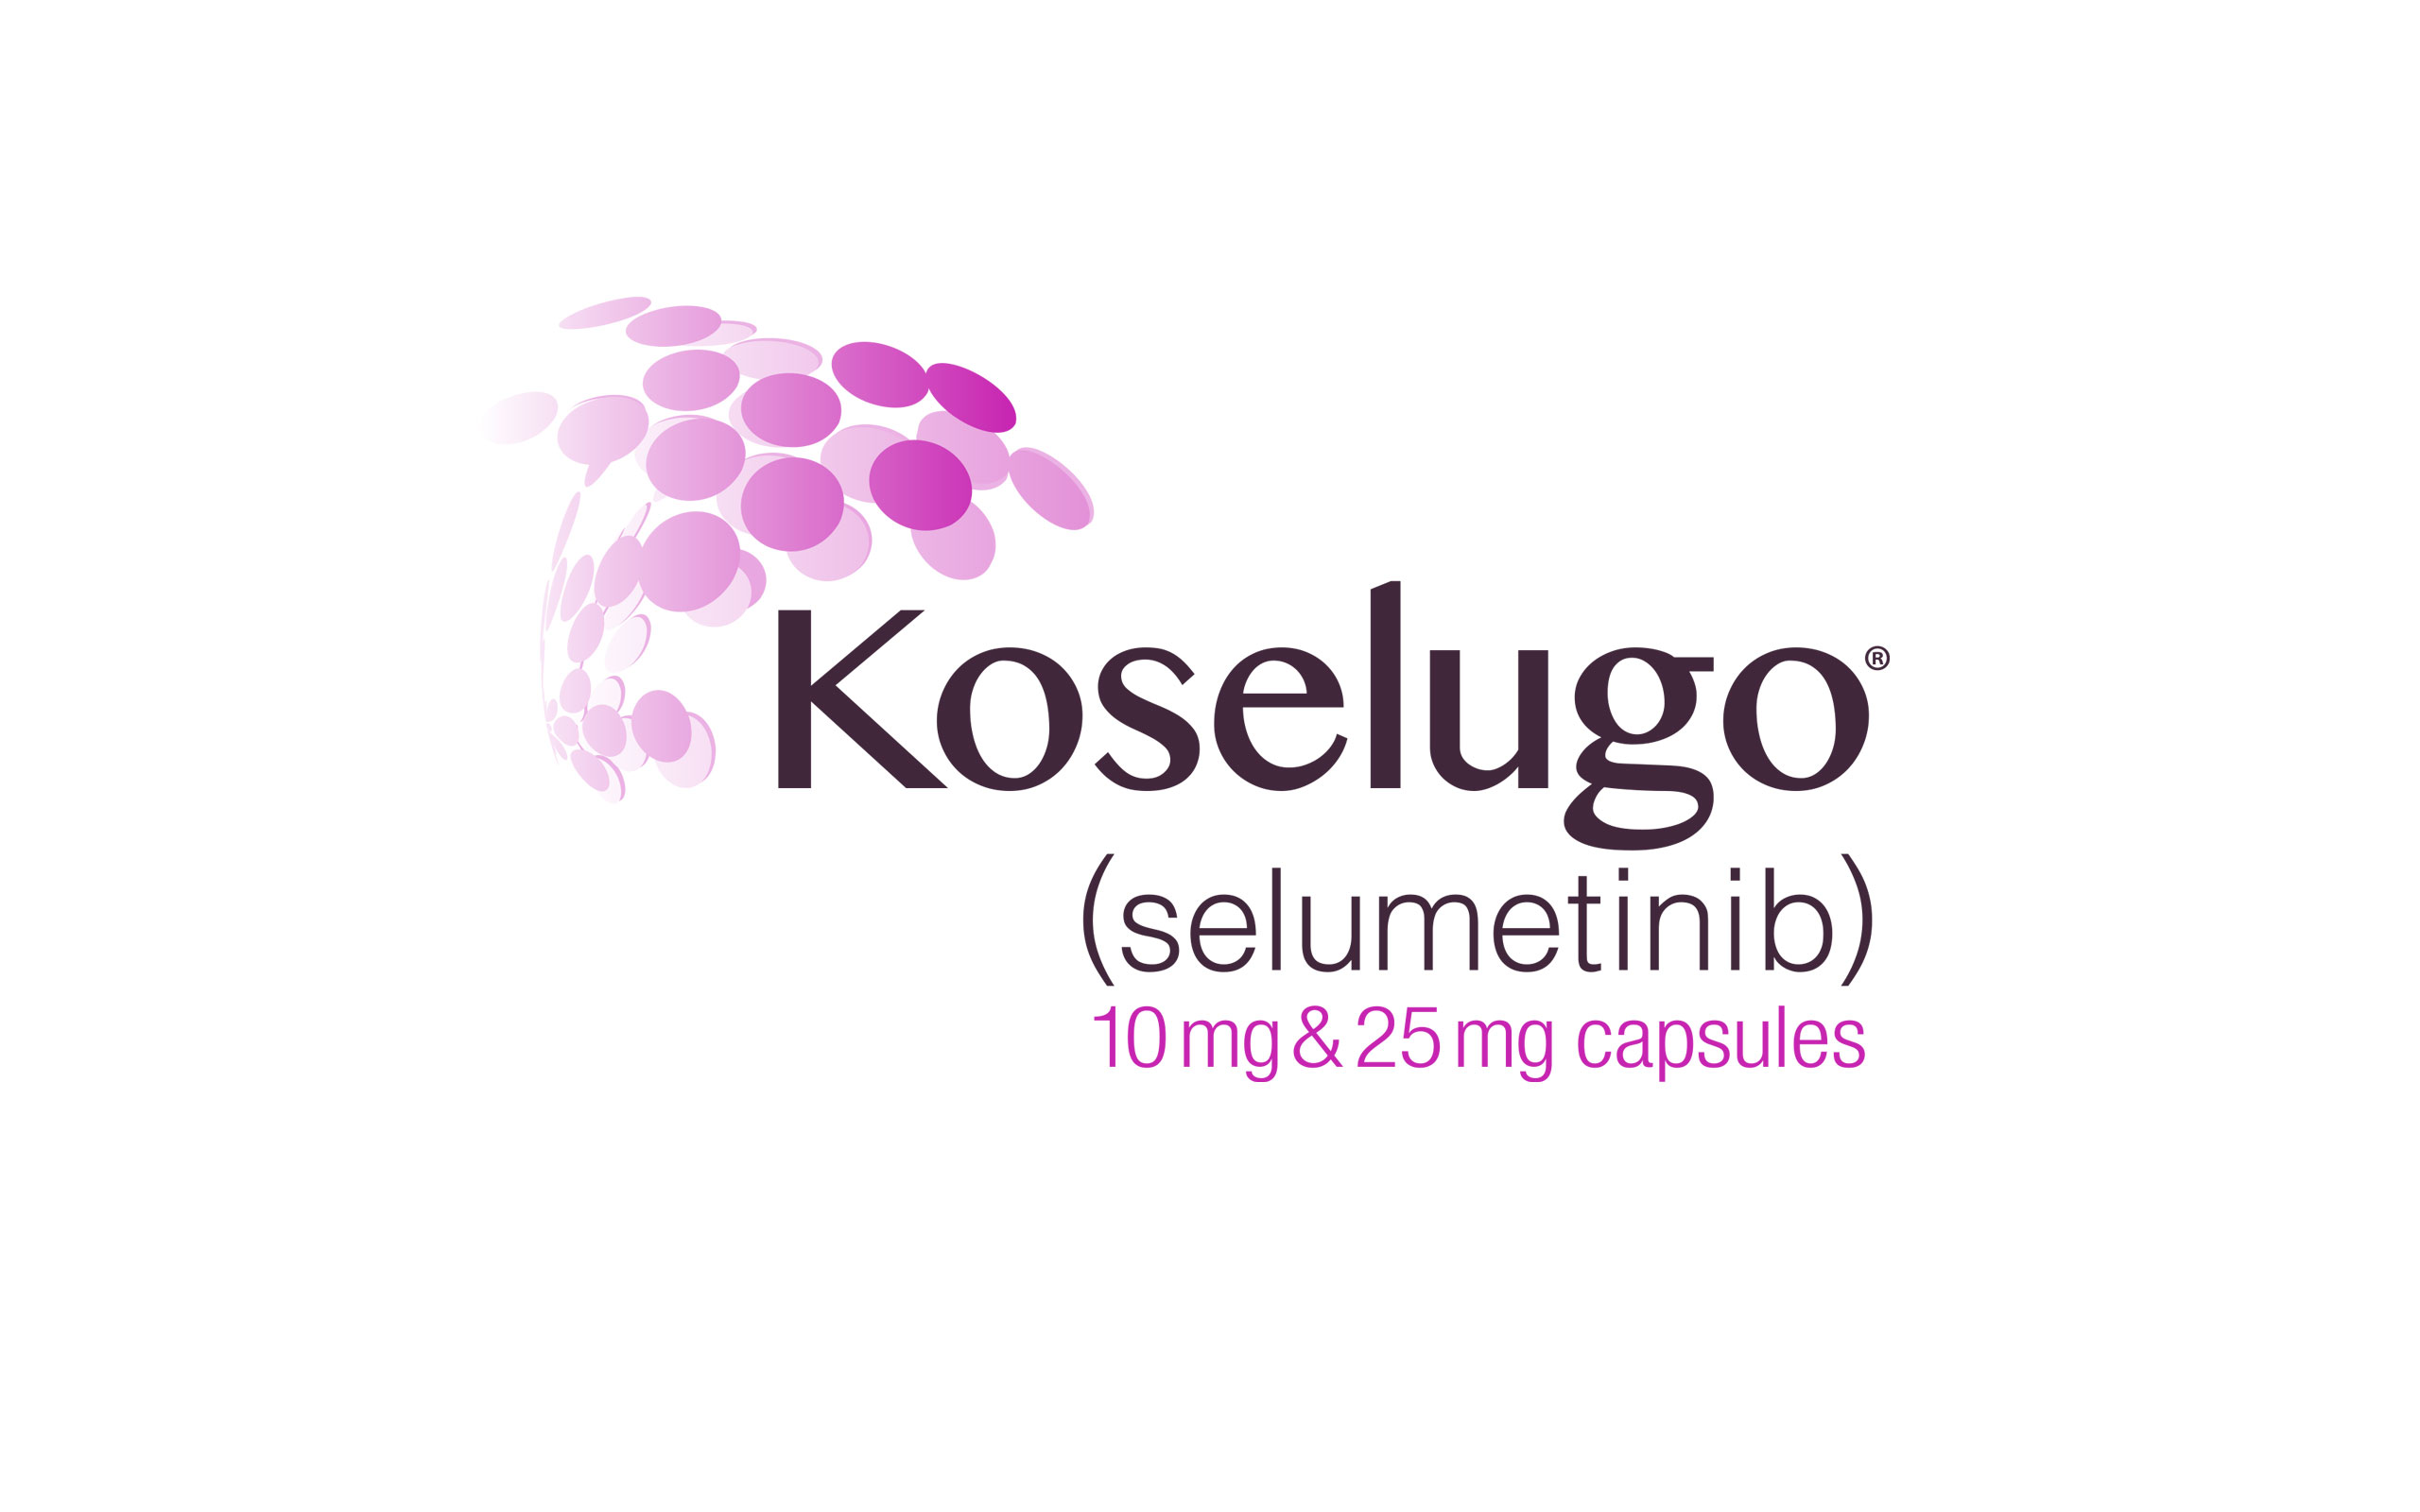 Koselugo logo